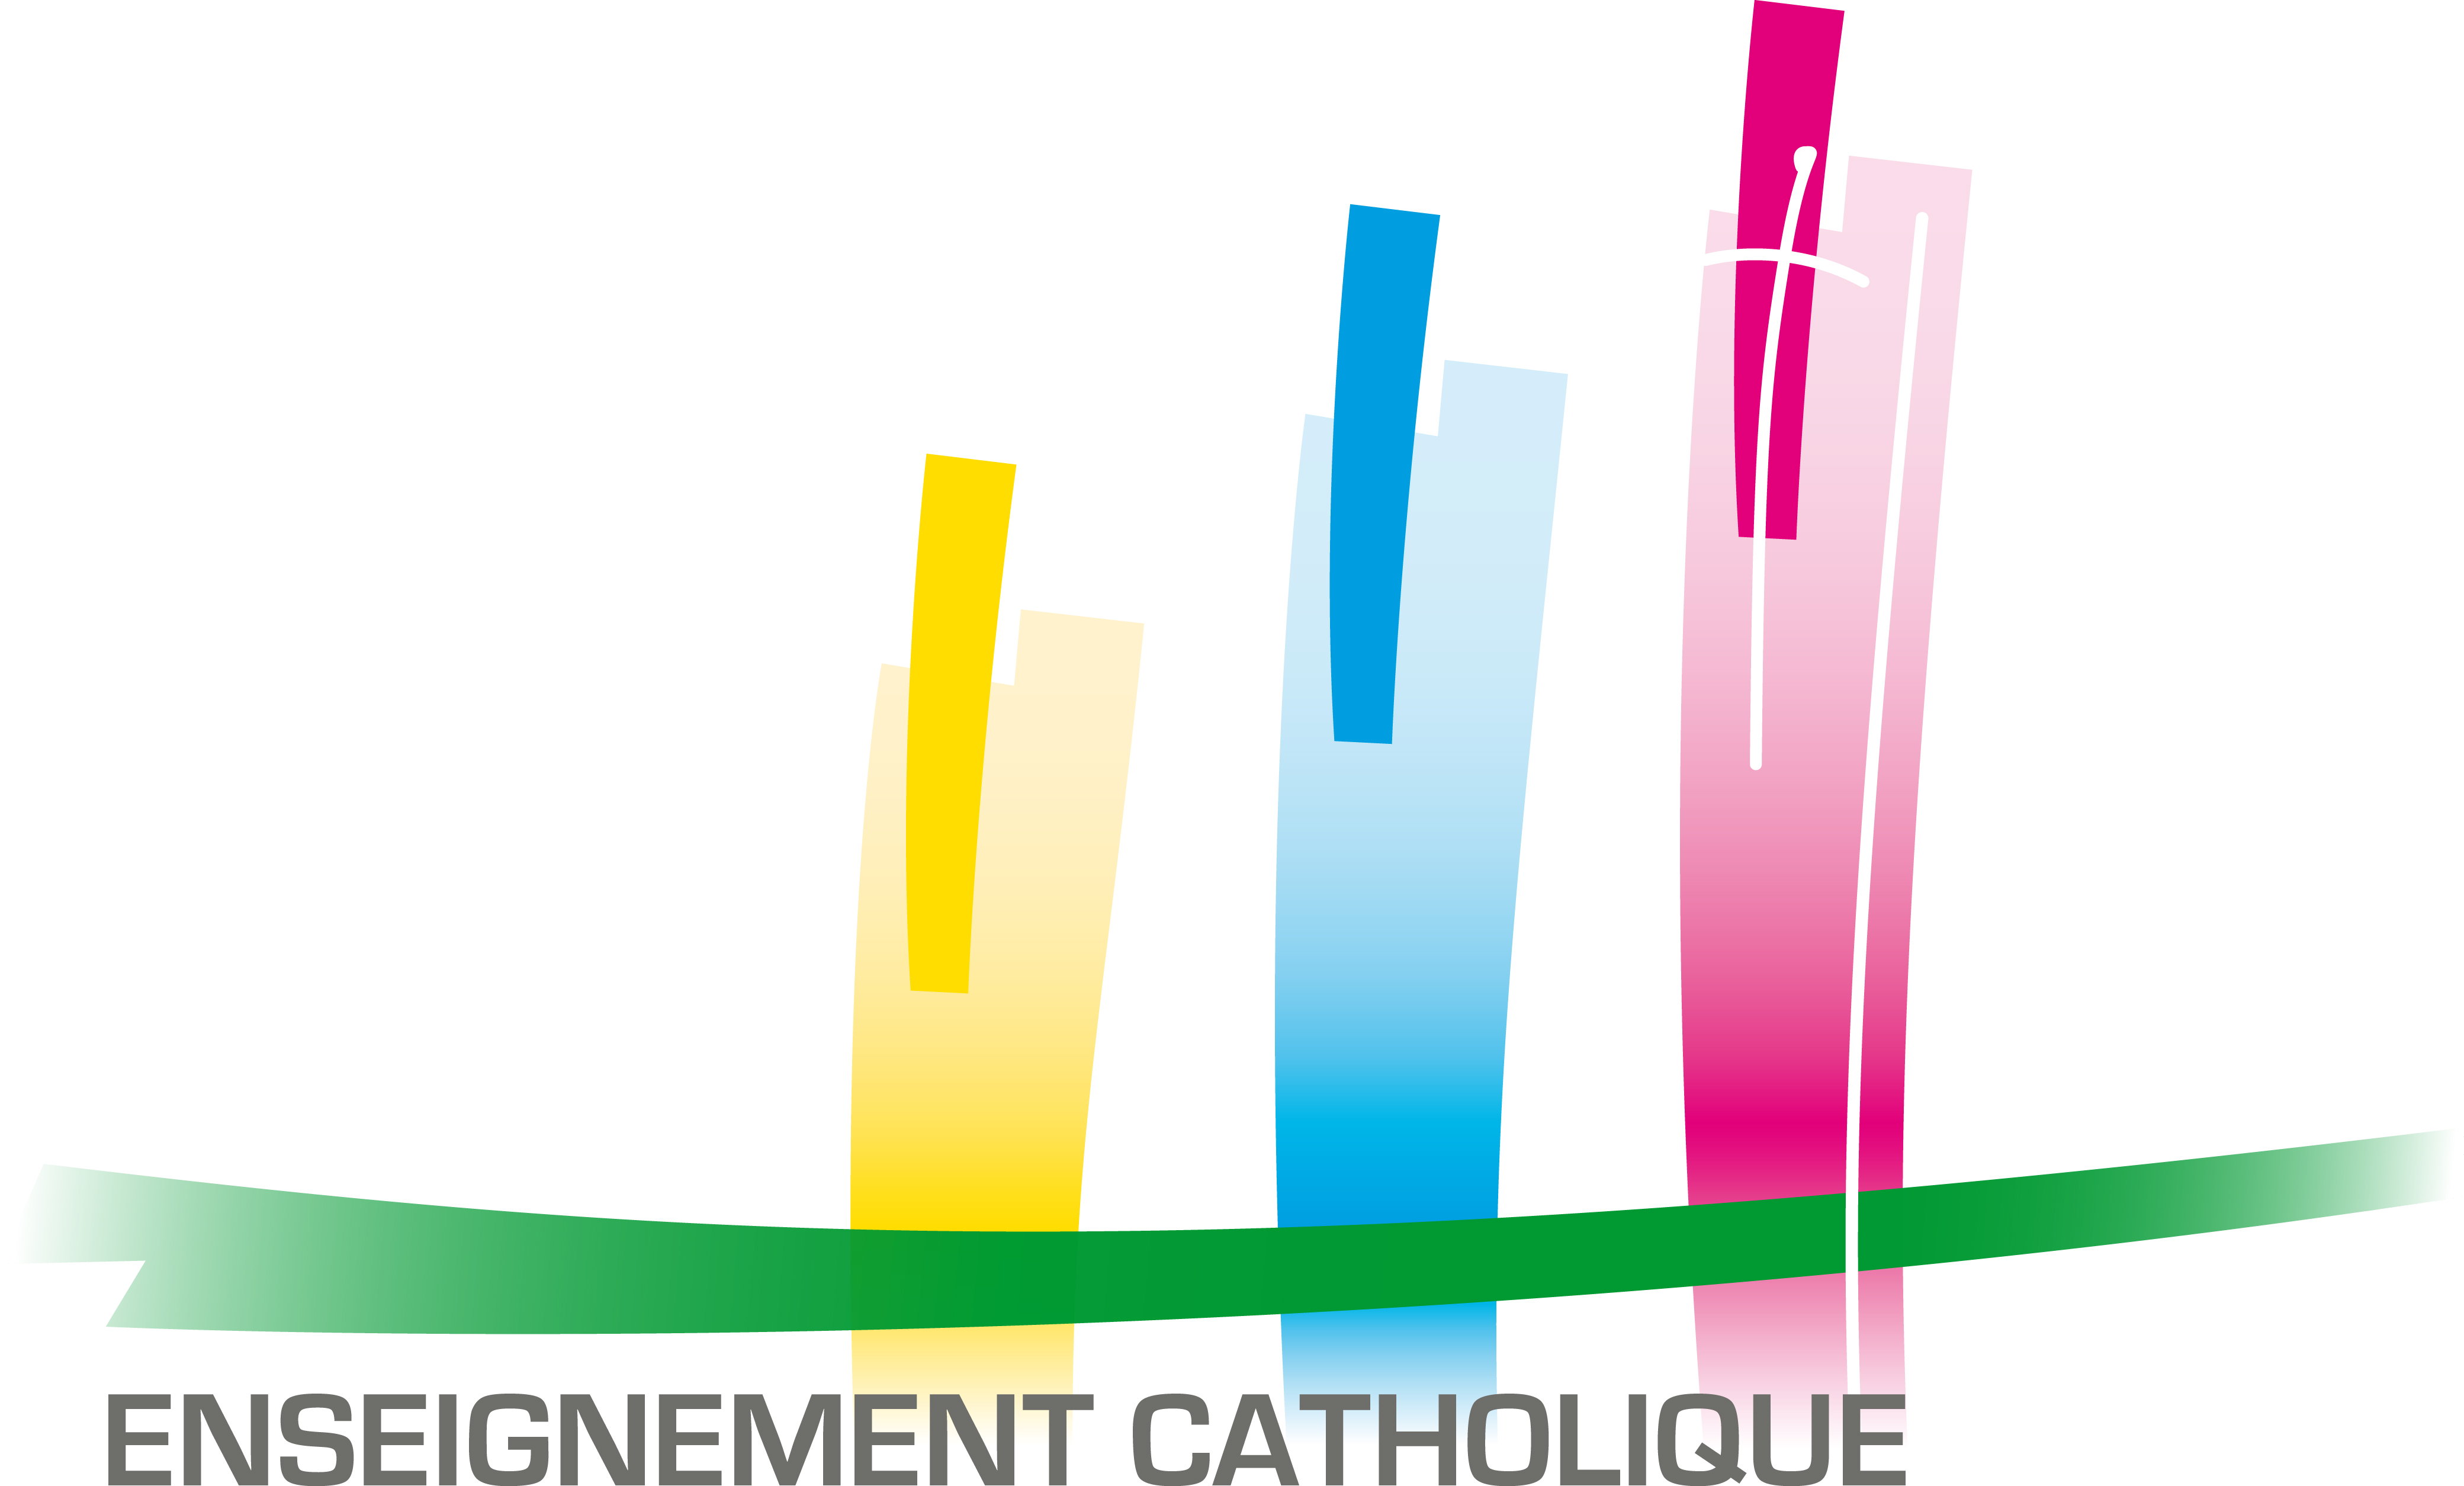 Résultat de recherche d'images pour "logo enseignement catholique"